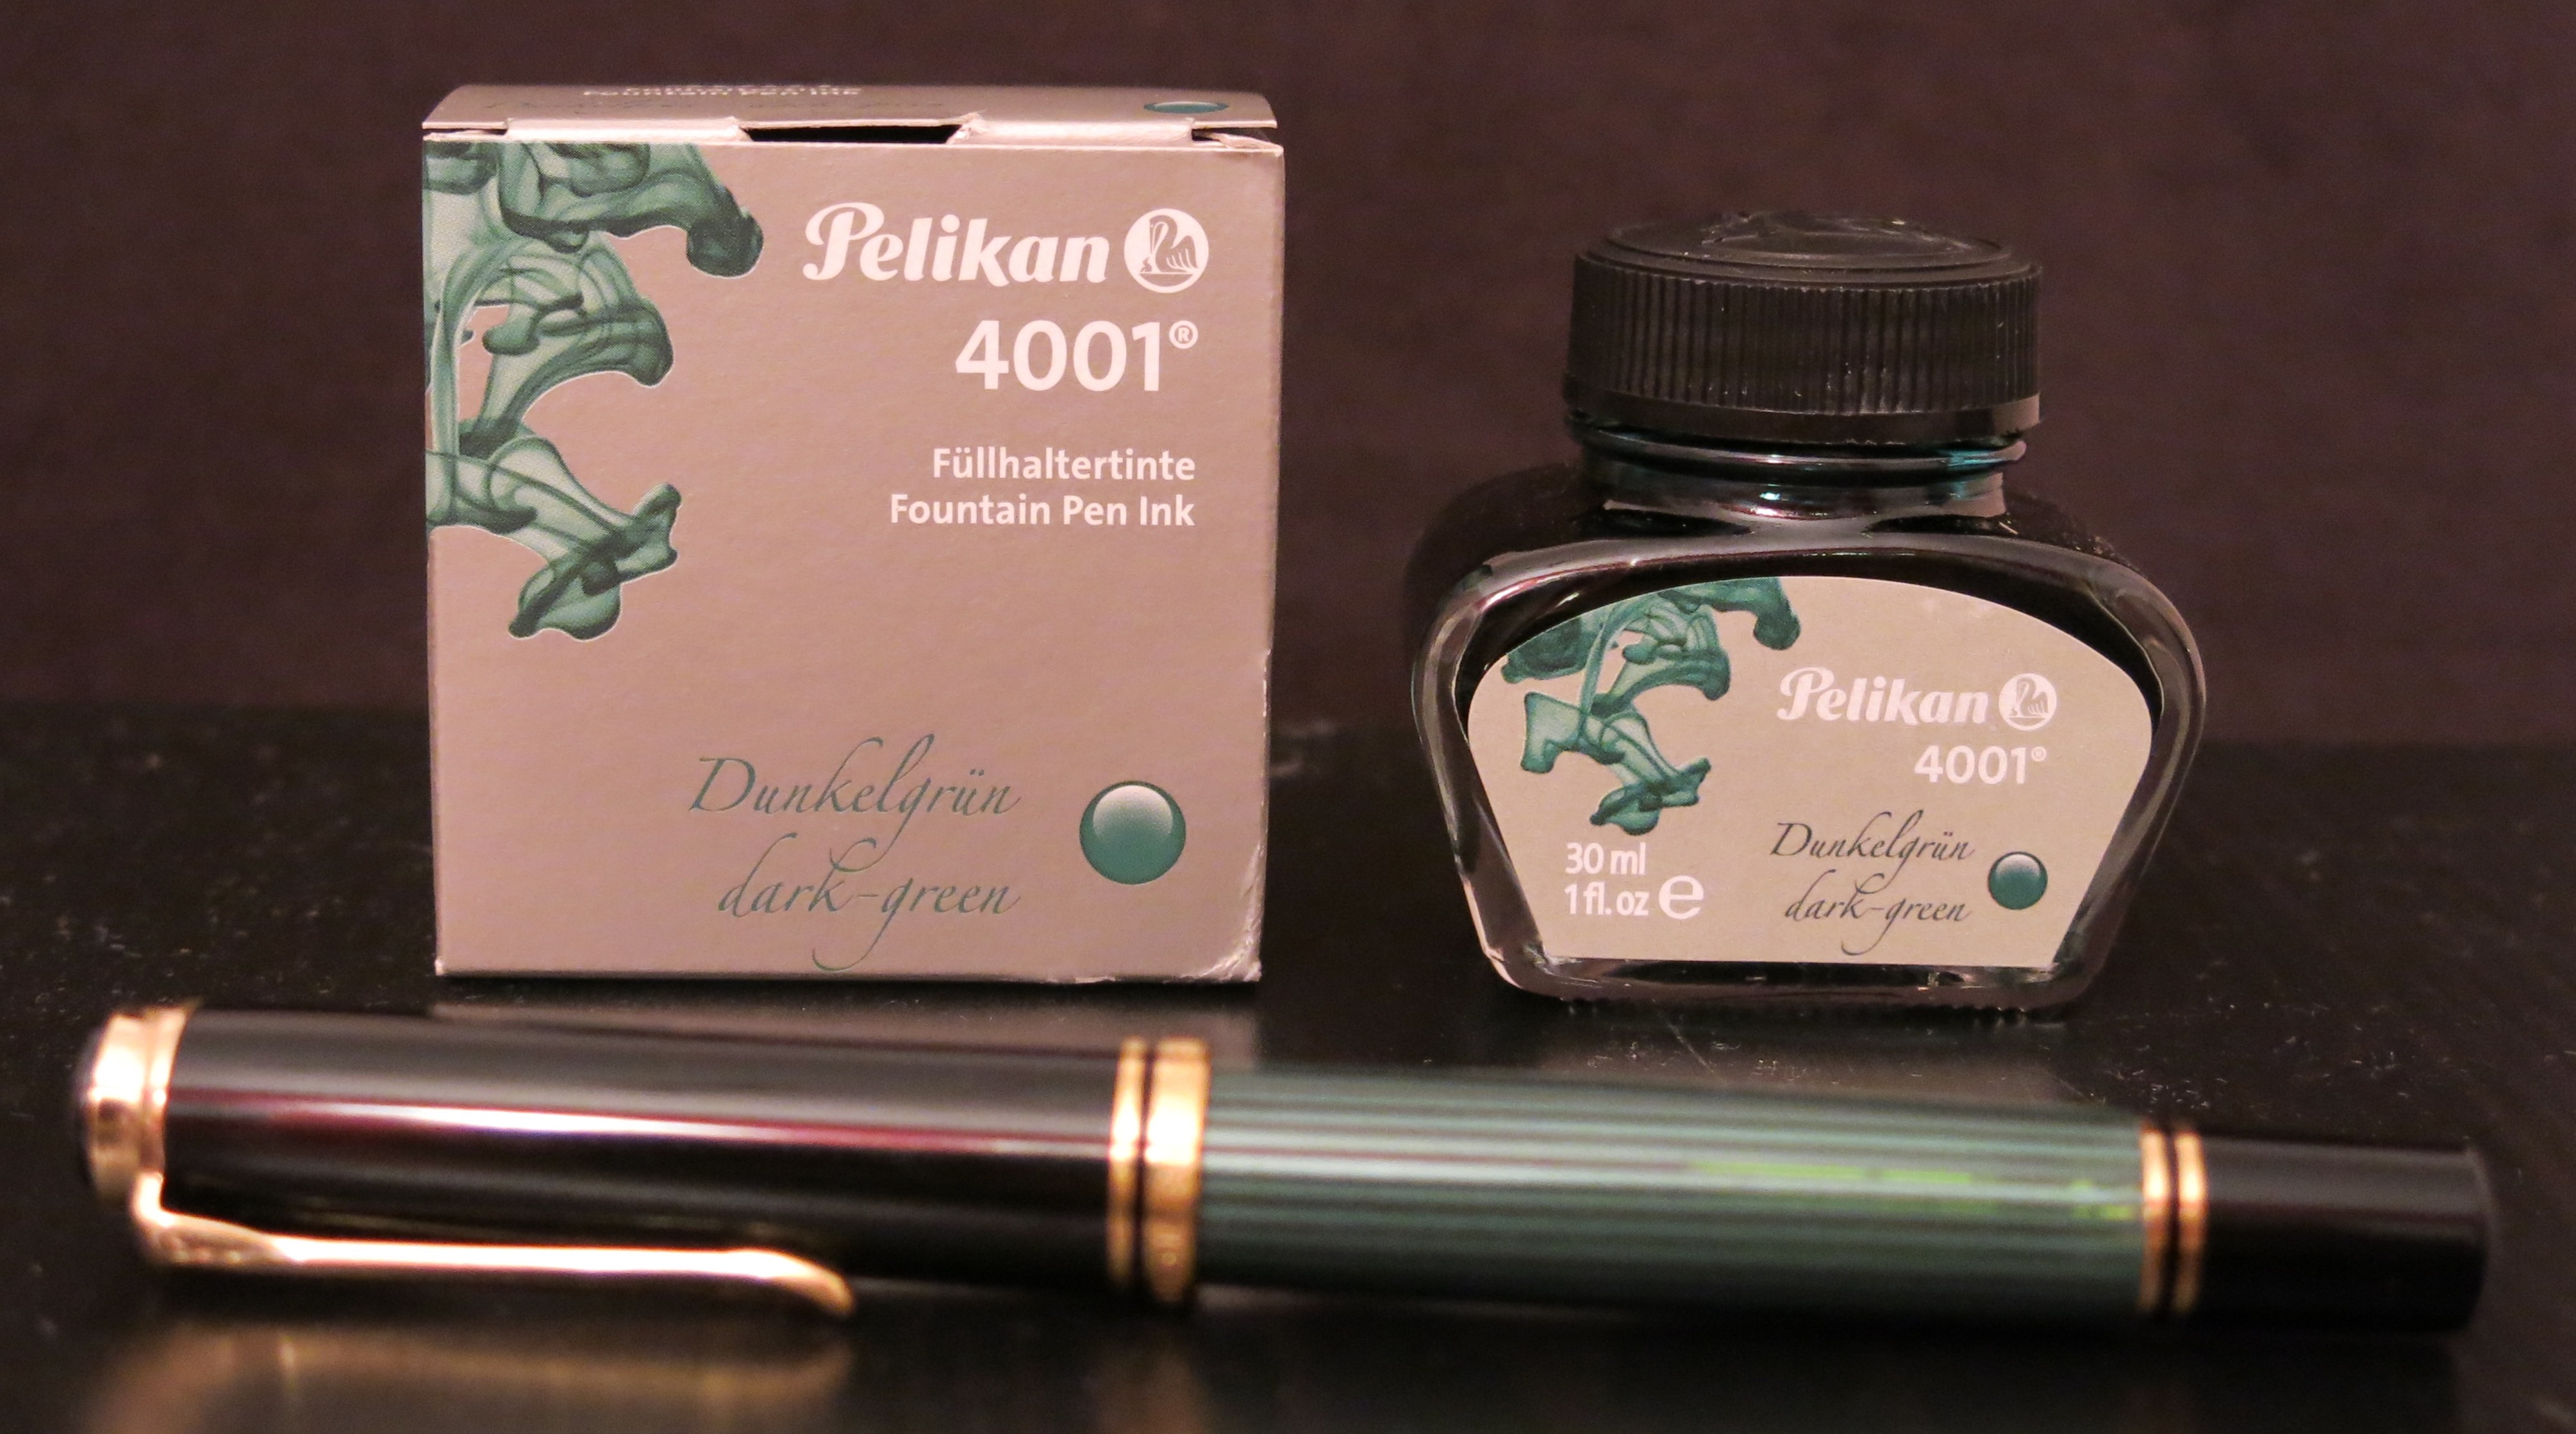 Pelikan 4001® ink glass jar - Pelikan